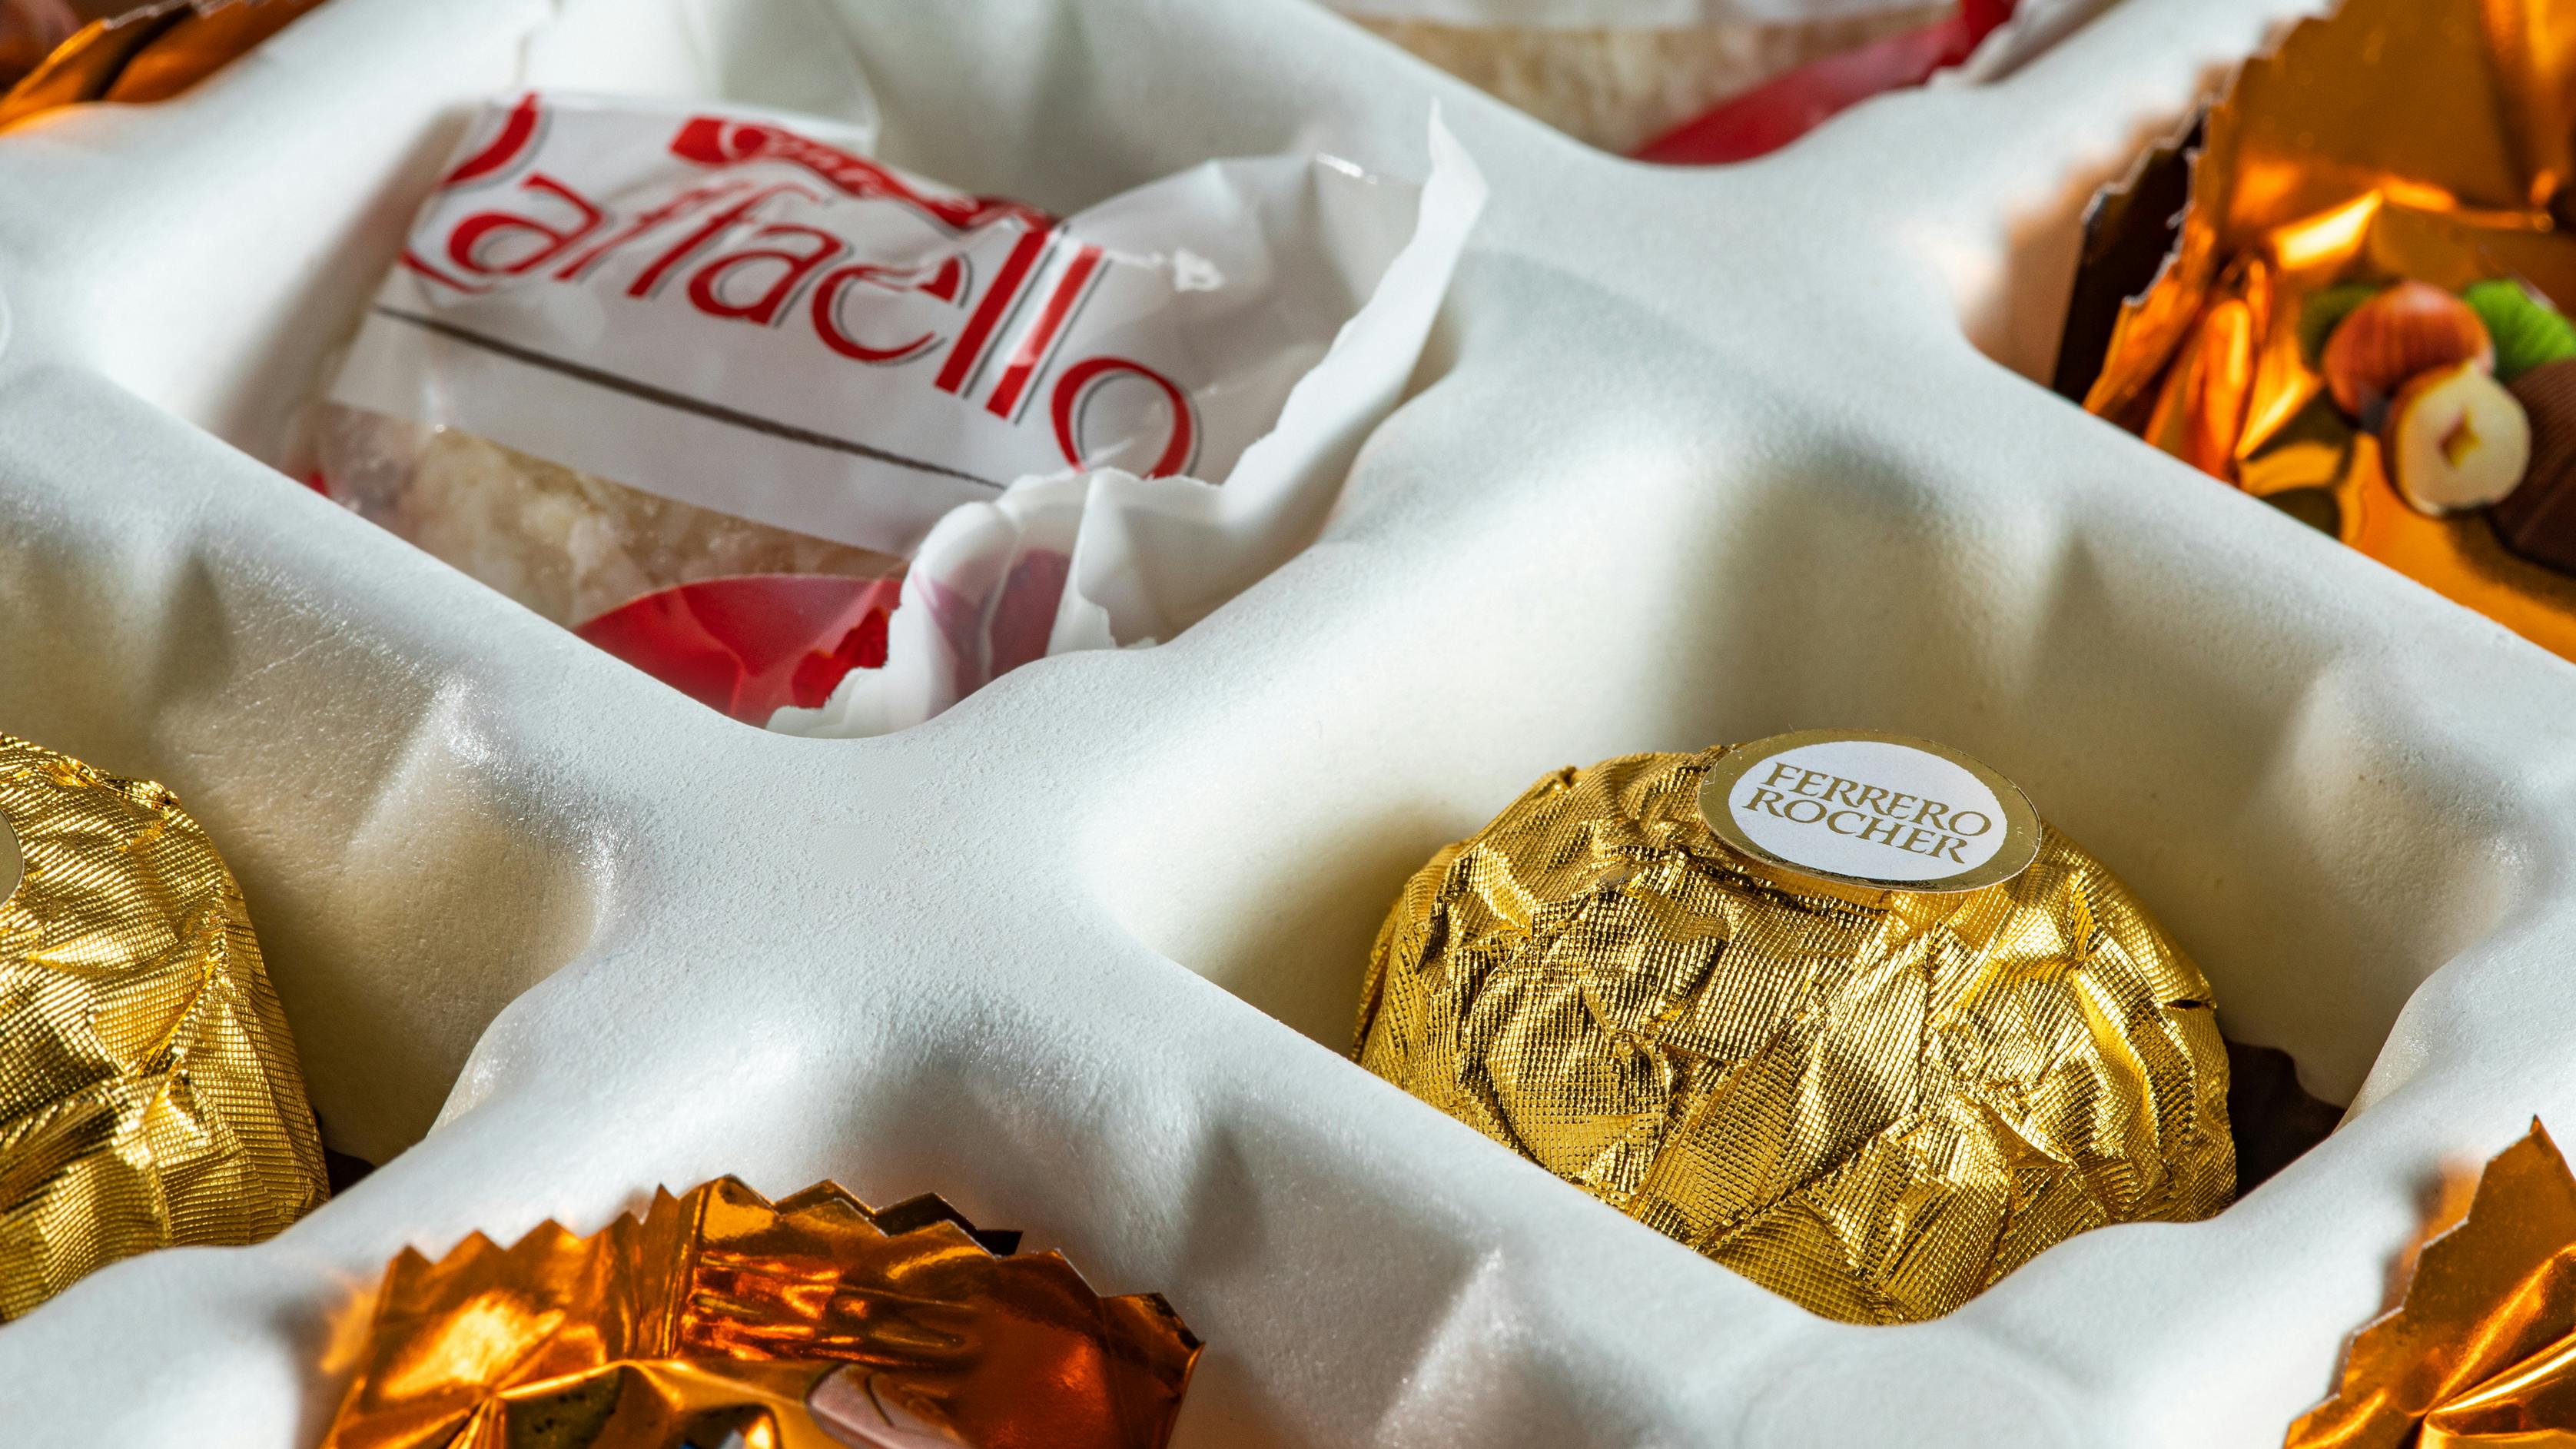 Imballaggio interno di un calendario dell'avvento personalizzato con cioccolatini Ferrero